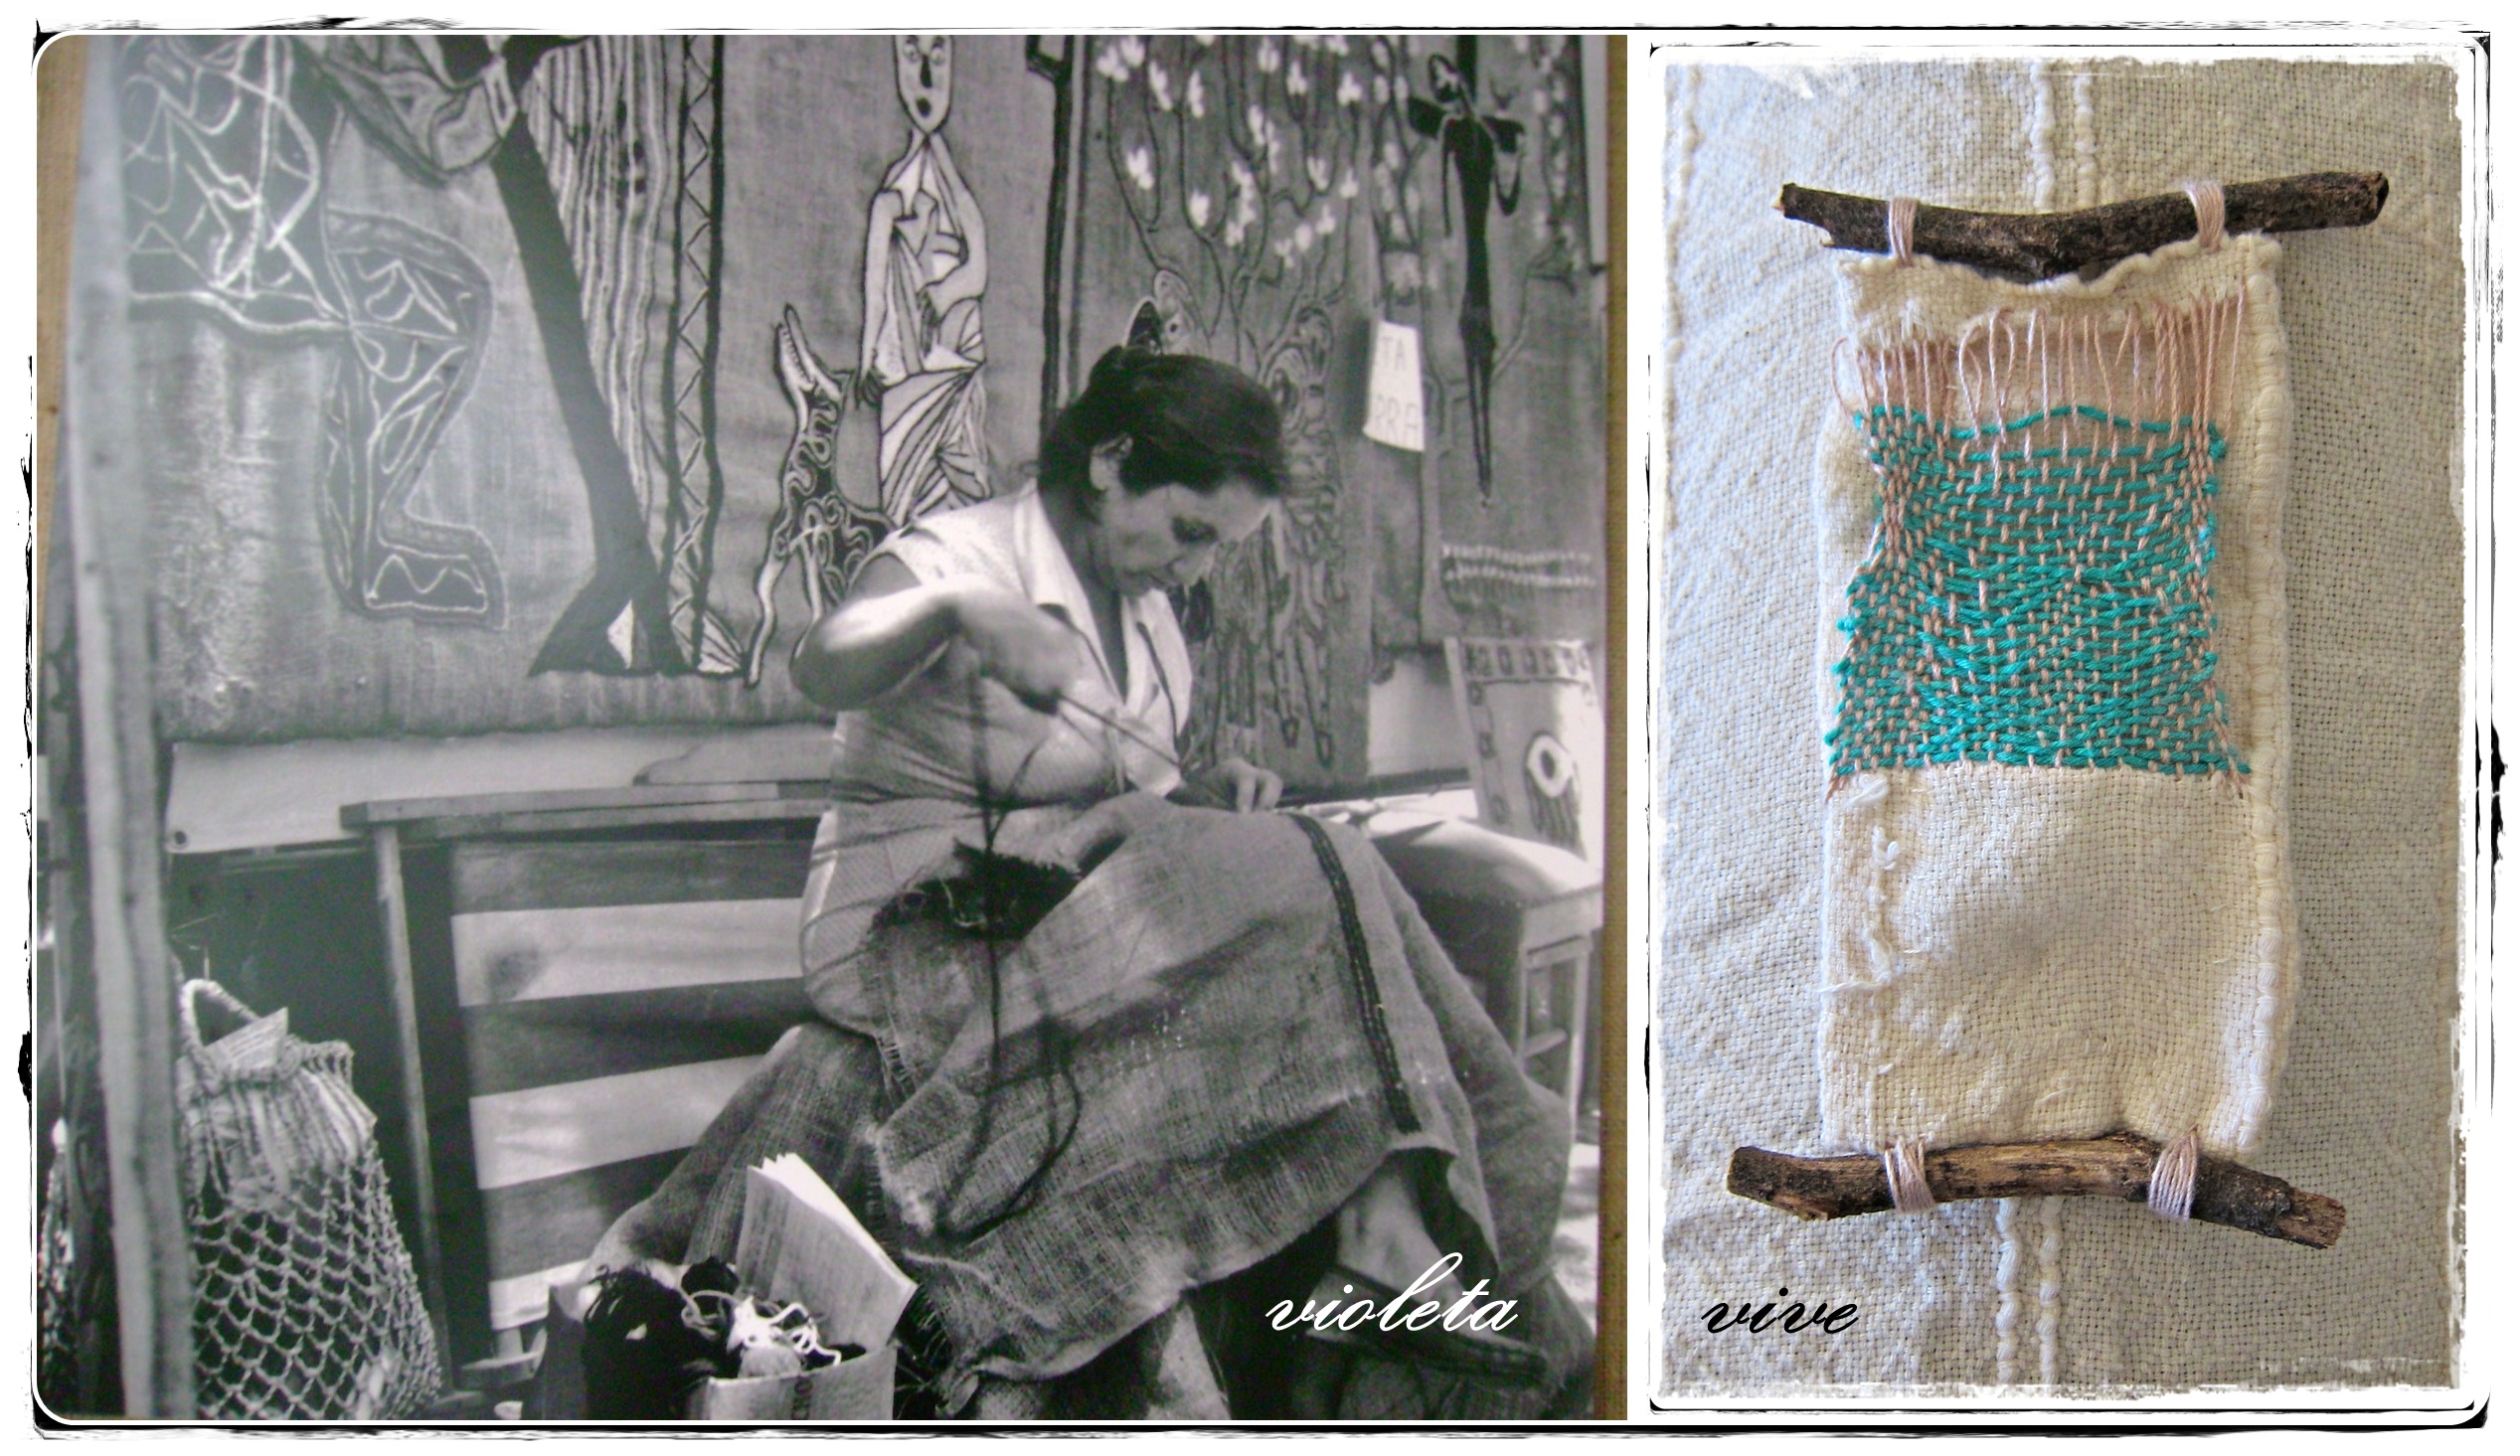 Fotomontaggio costruito con un'immagine di Violeta Parra  al lavoro e un'opera ispirata a lei.